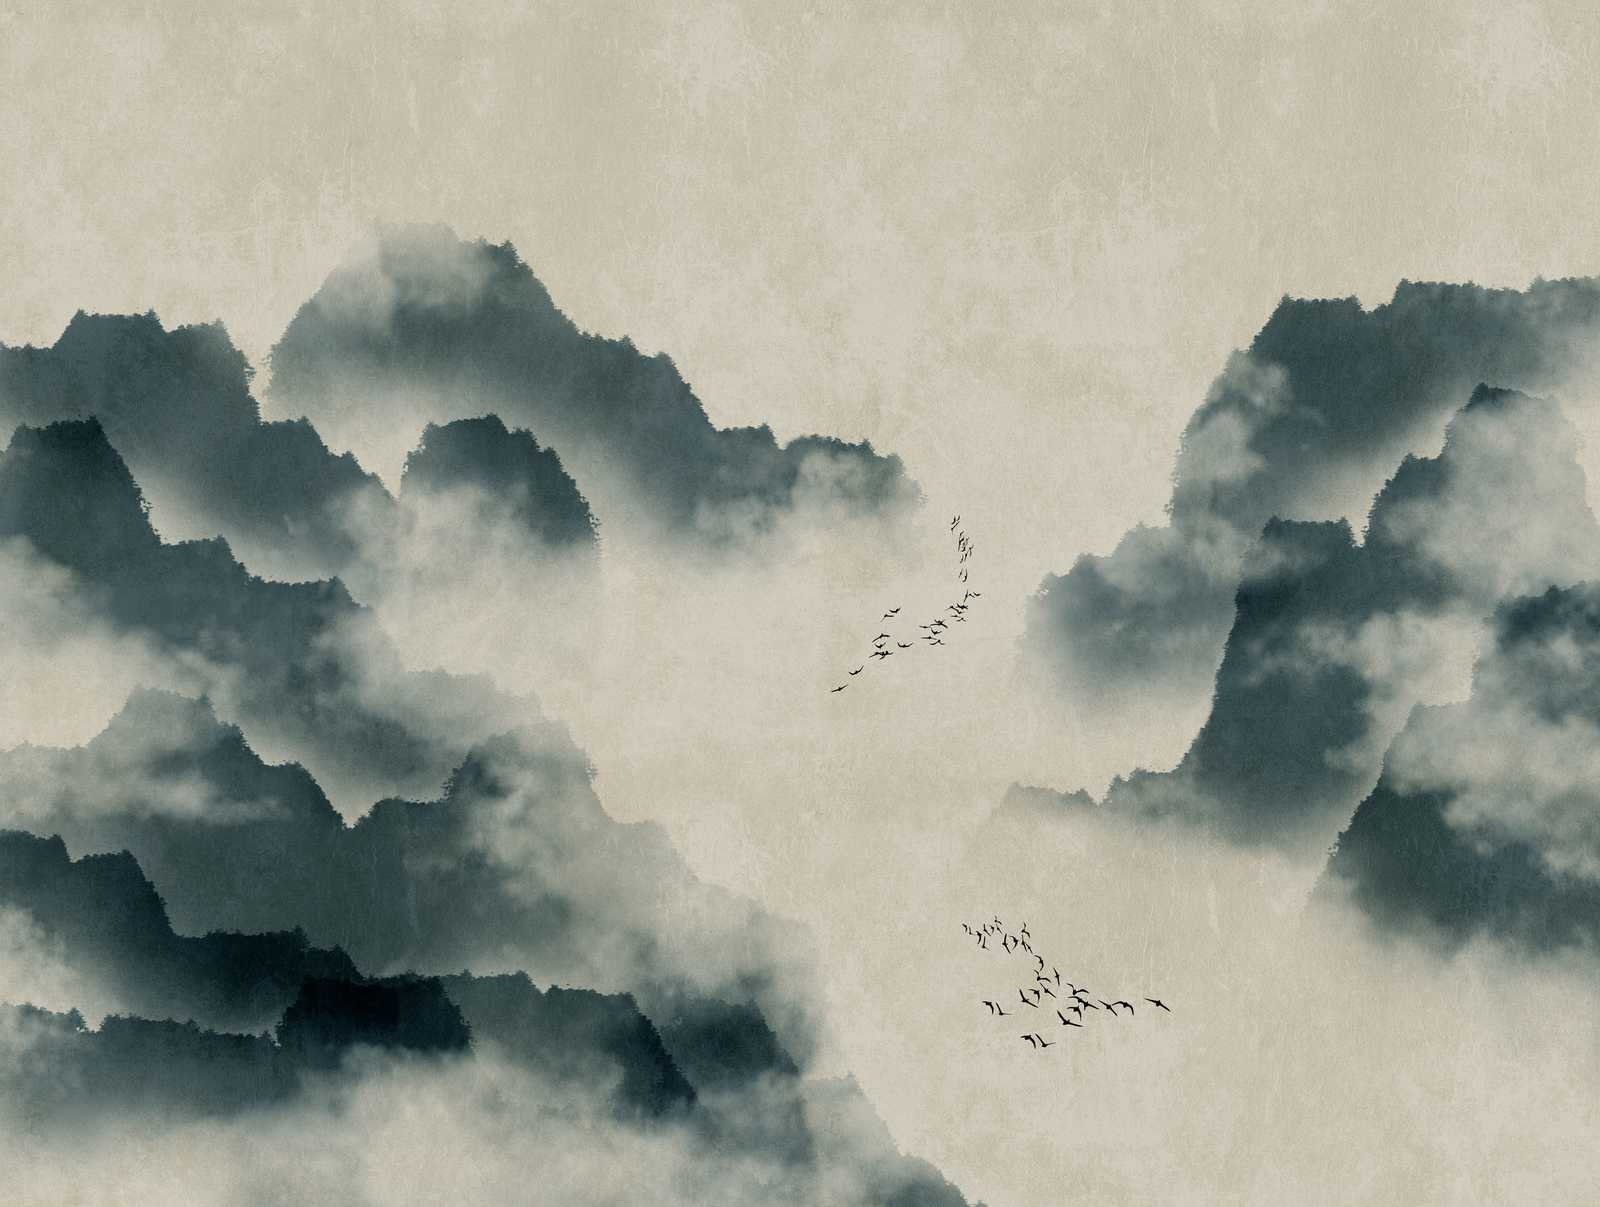             Papel pintado novedad | papel pintado con motivo de acuarela con montañas, niebla y bandada de pájaros
        